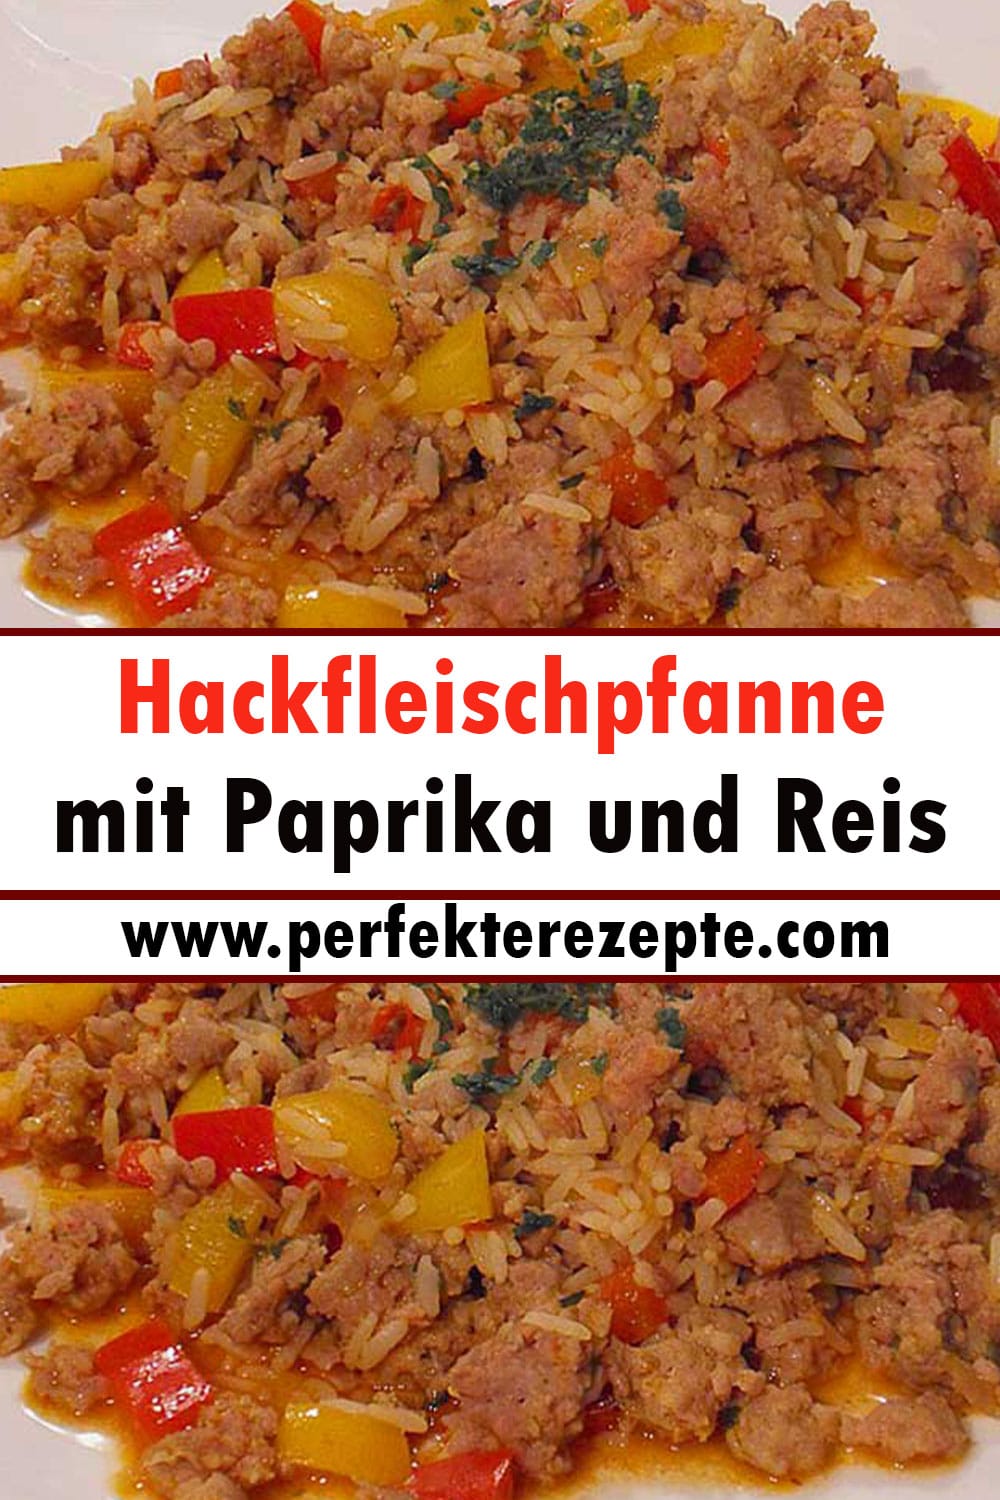 Hackfleischpfanne mit Paprika und Reis Rezept Ein Tolles Gericht!